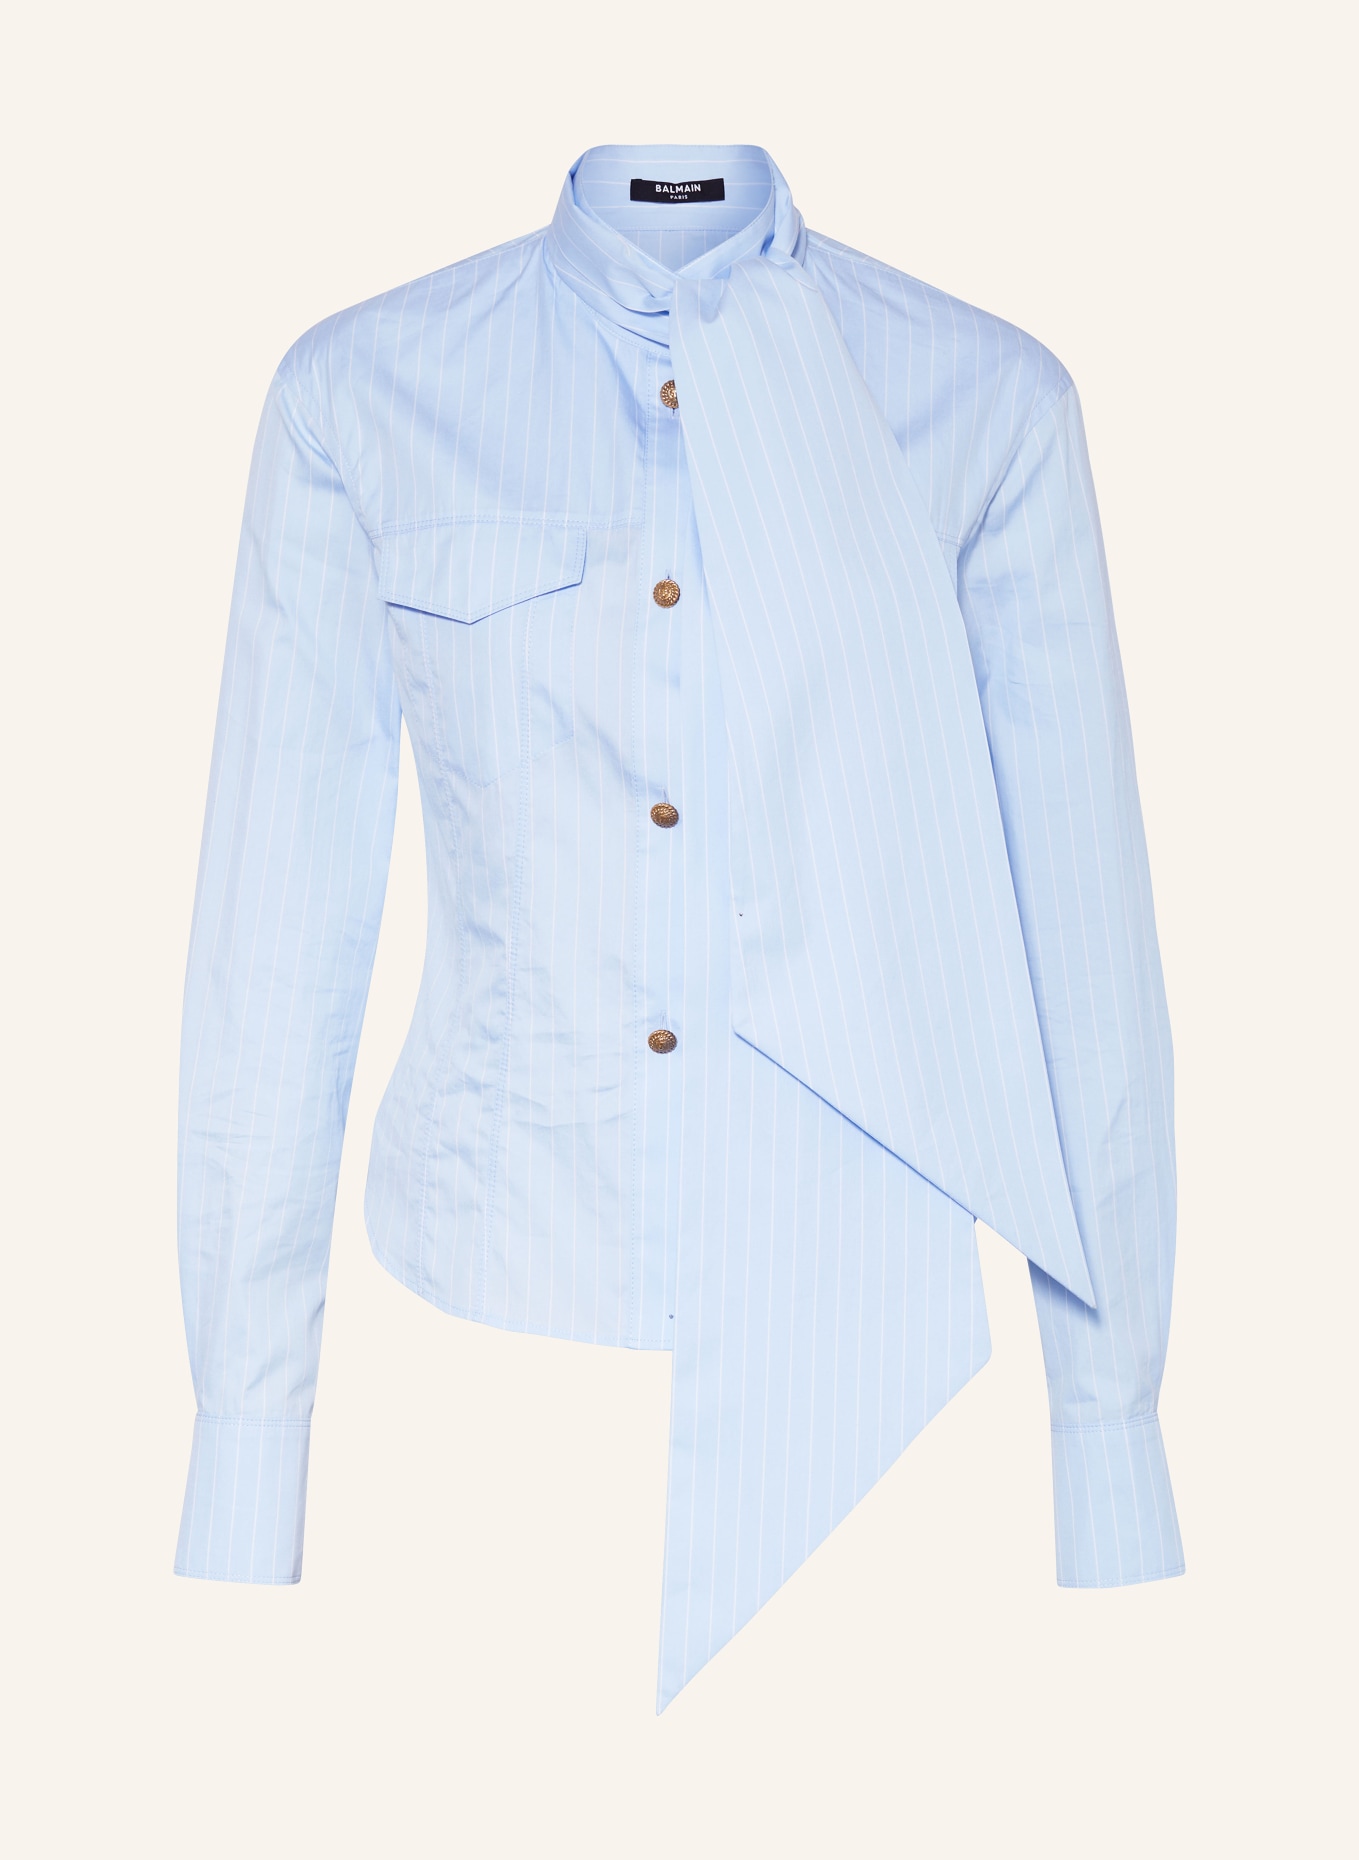 BALMAIN Bow-tie blouse, Color: LIGHT BLUE/ WHITE (Image 1)